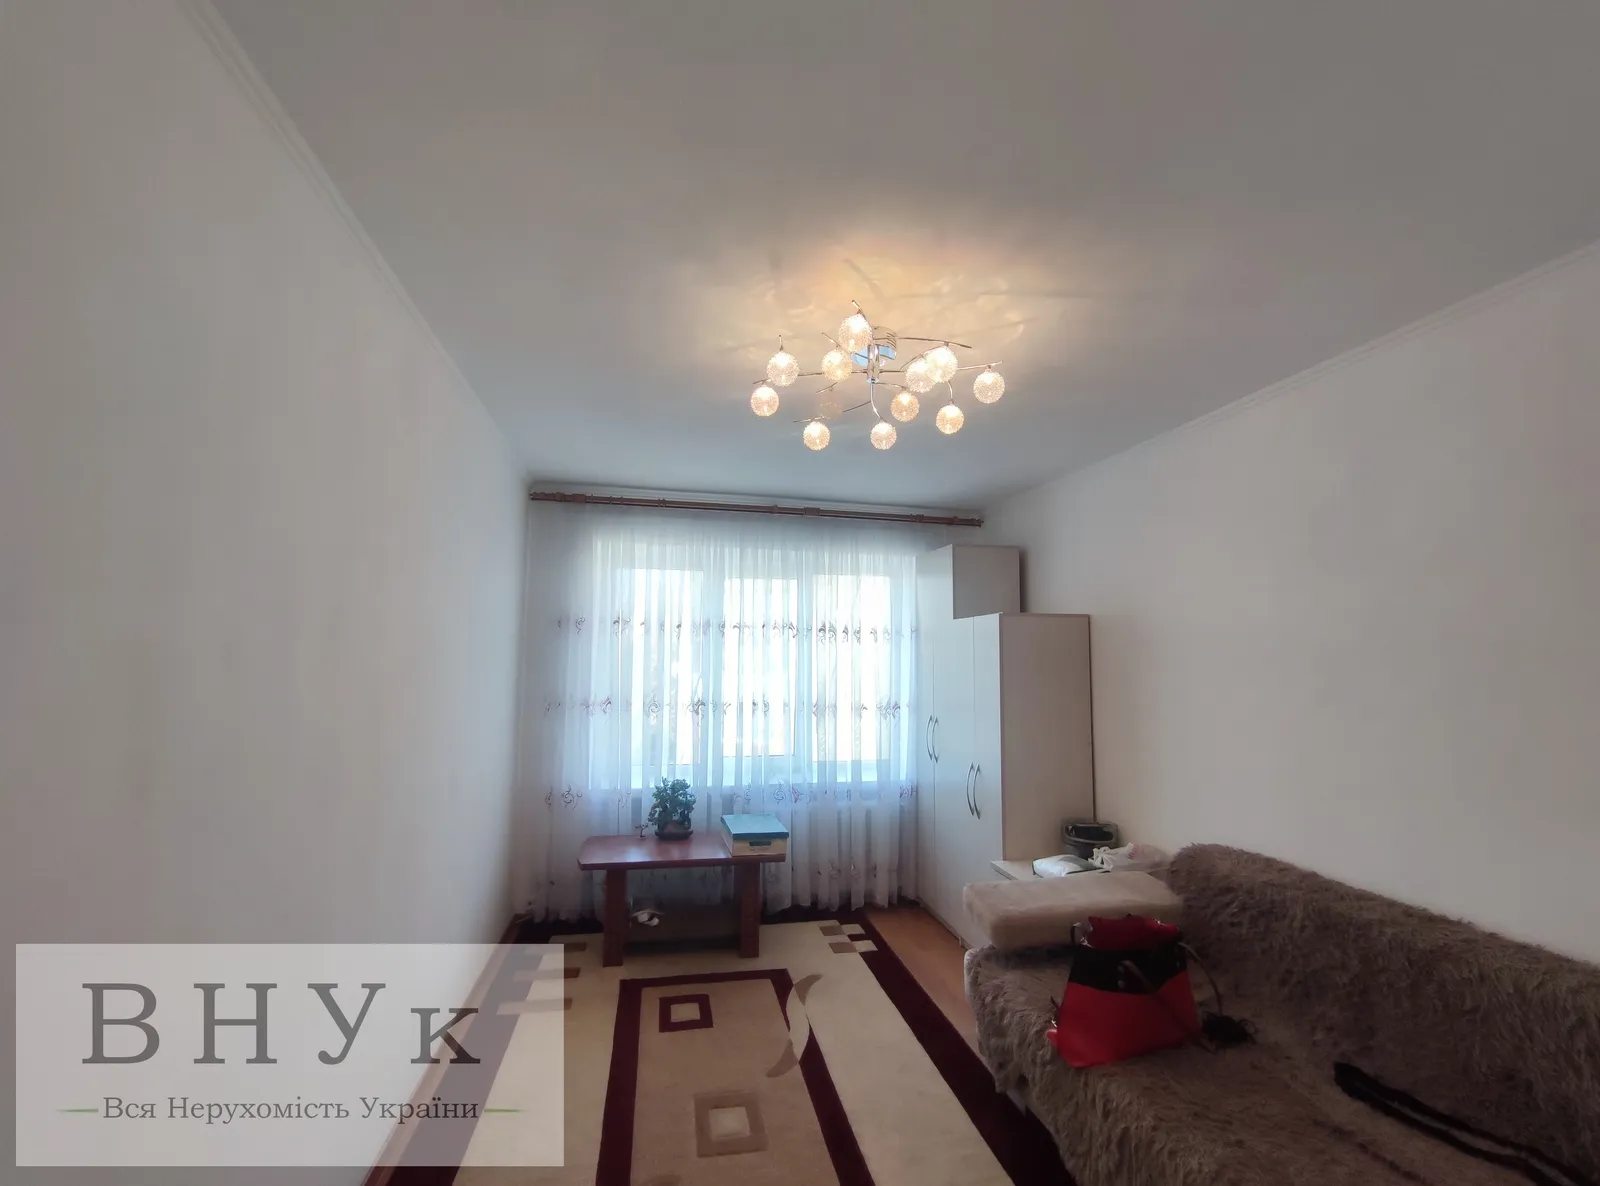 Apartments for sale. 2 rooms, 38 m², 5th floor/5 floors. Halytskoho D. b-r, Ternopil. 